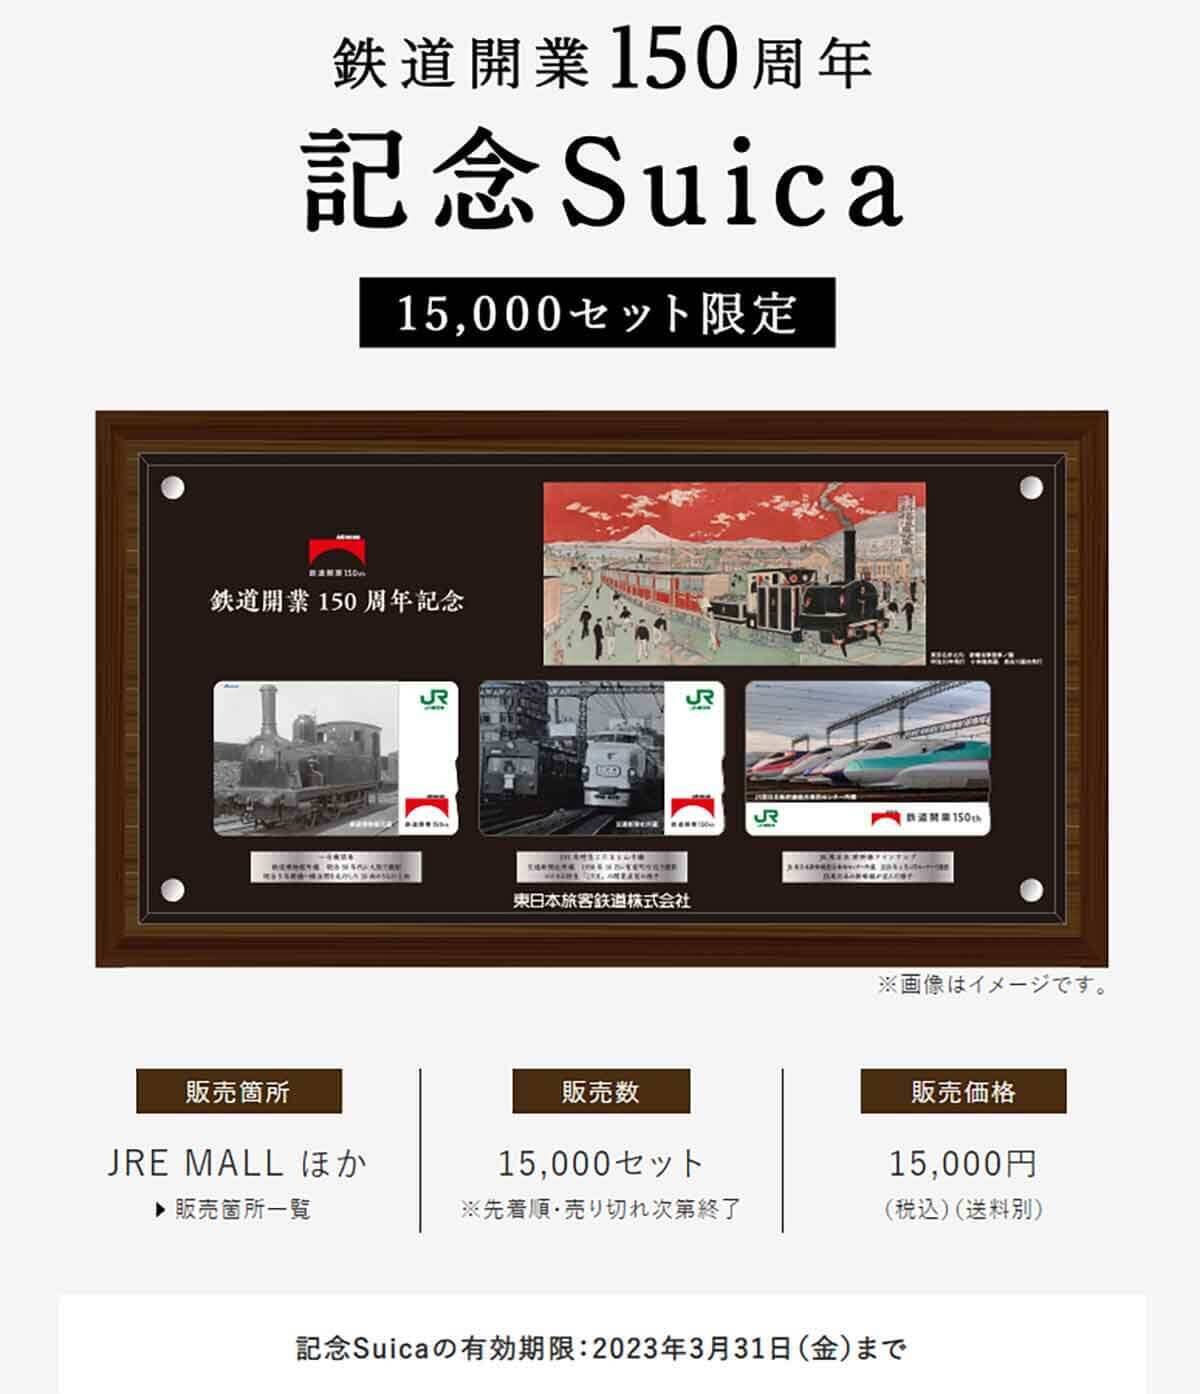 Suica（スイカ）は10年間未使用だと失効するので注意を！ とくにレアな記念Suicaなど